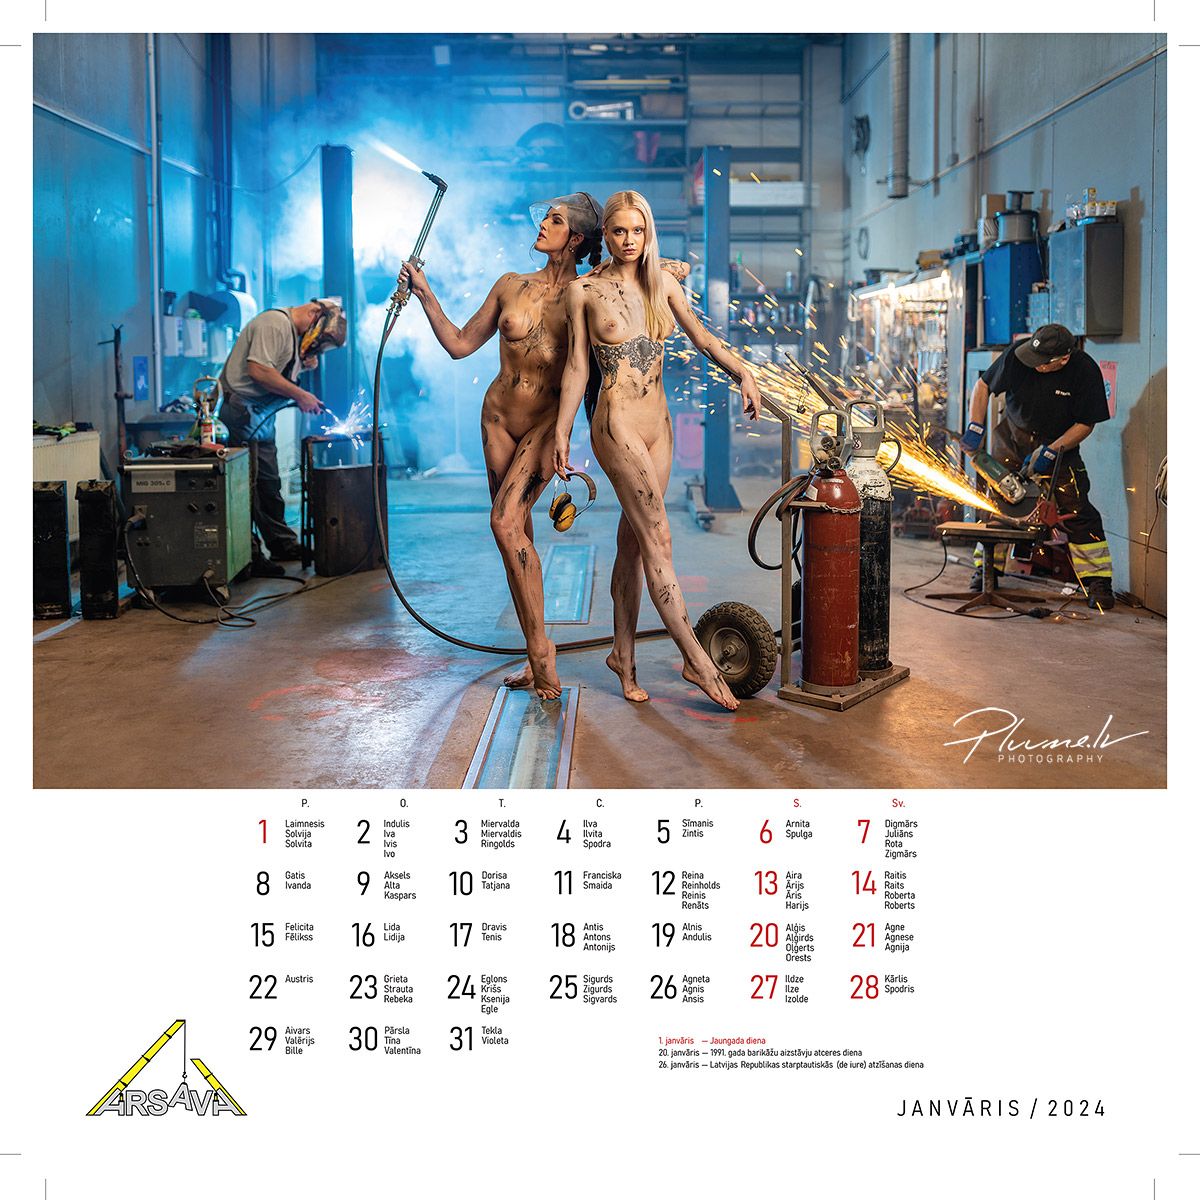 Mārtiņš Plūme | Erotisks kailfoto kalendārs 2024 gadam, ARSAVA | Fotografs Martins Plume kailfoto kalendars kailfoto fotografs 3